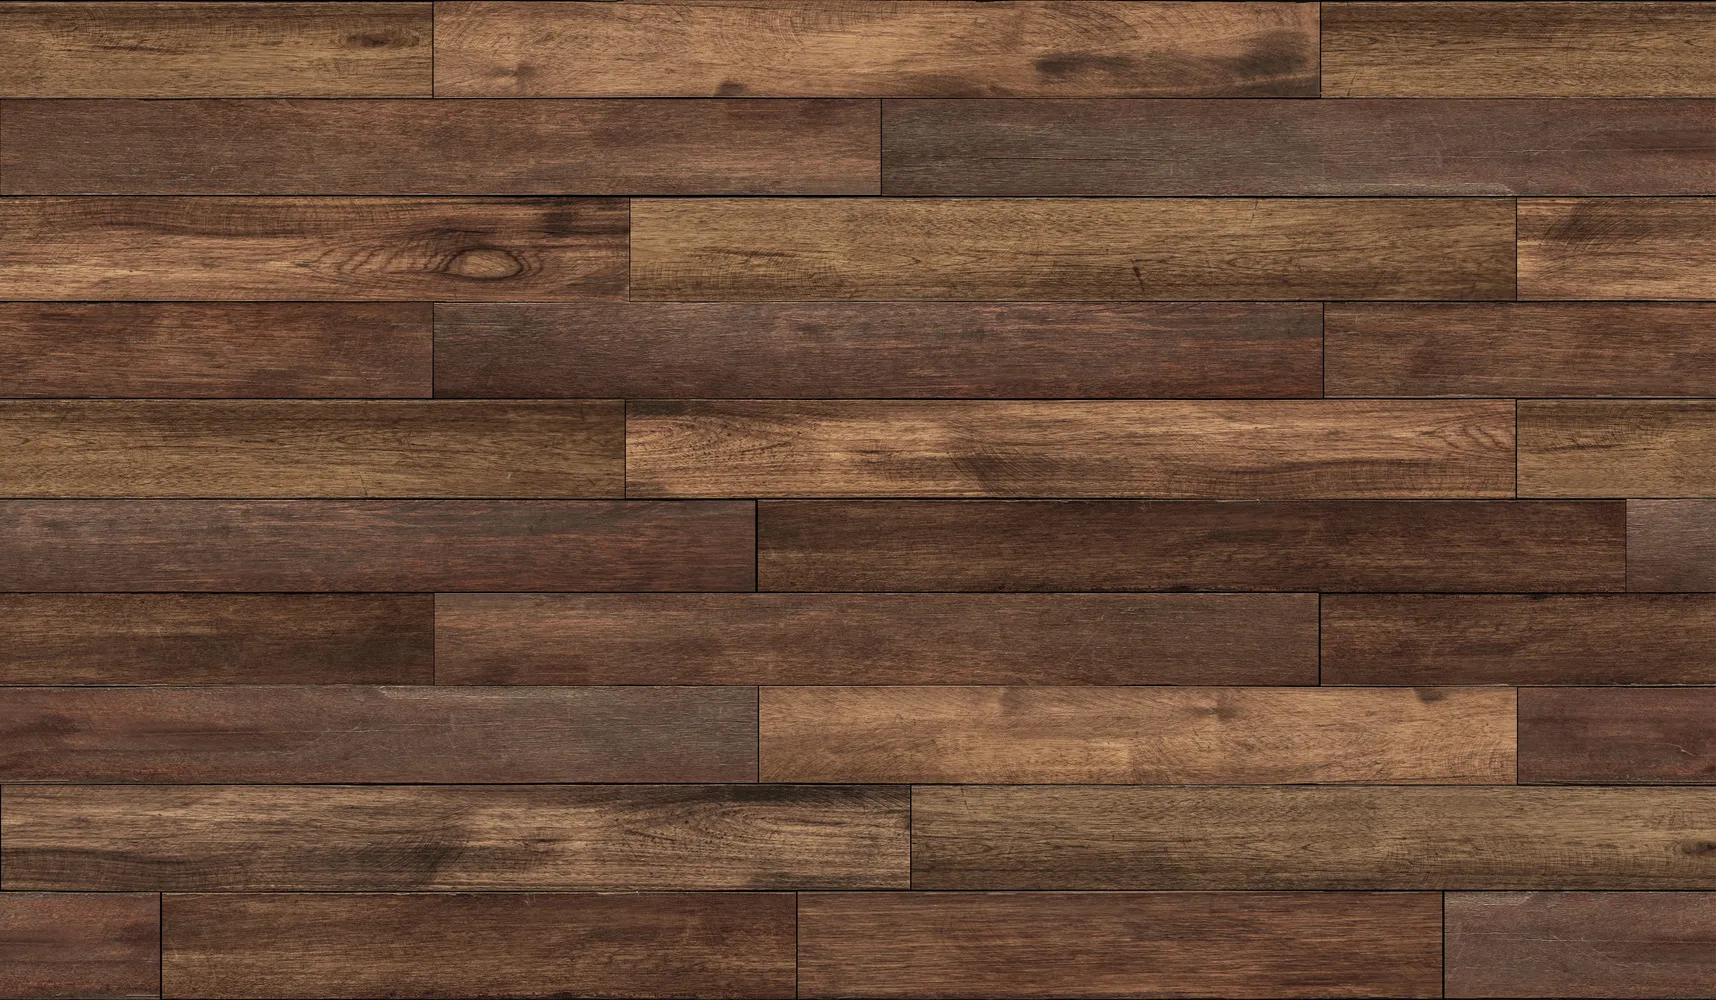 sample of dark brown hardwood flooring